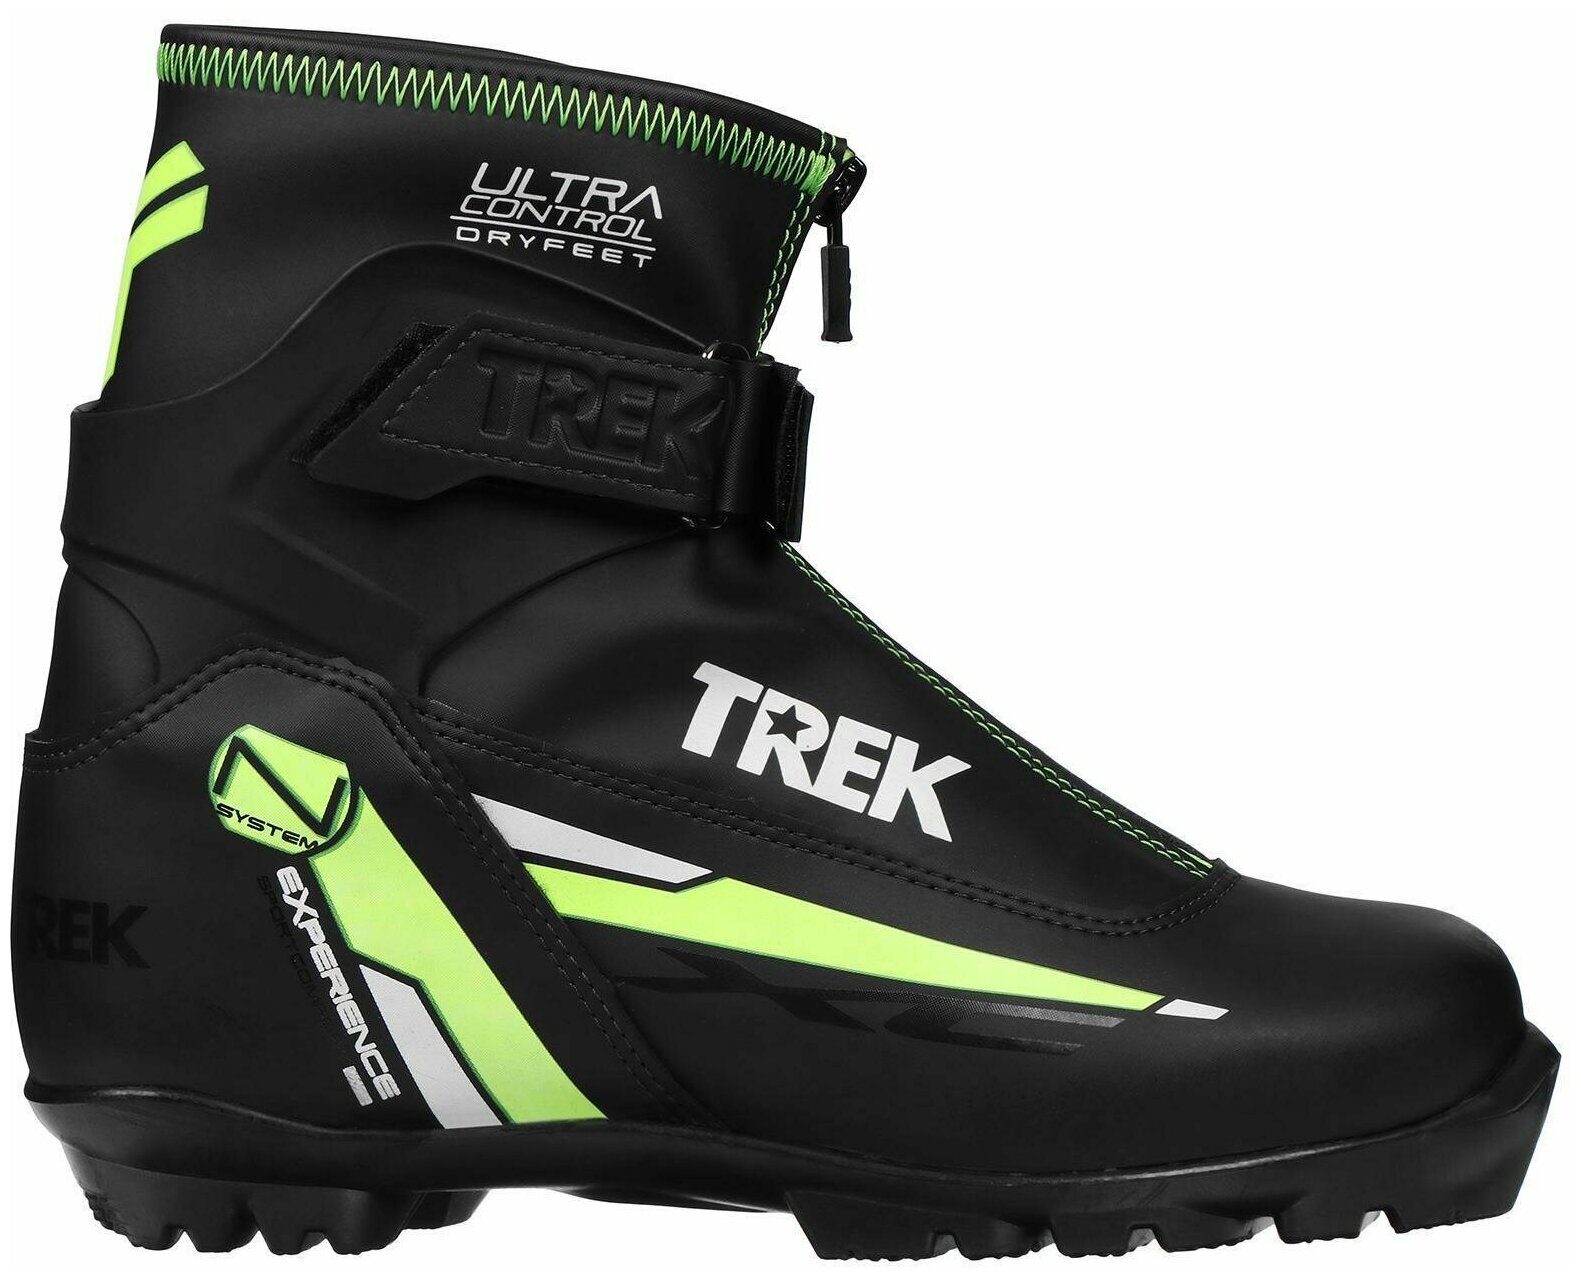 Ботинки лыжные NNN TREK Experience1 черный/лого зелёный неон размер RU37 EU38 СМ23,5